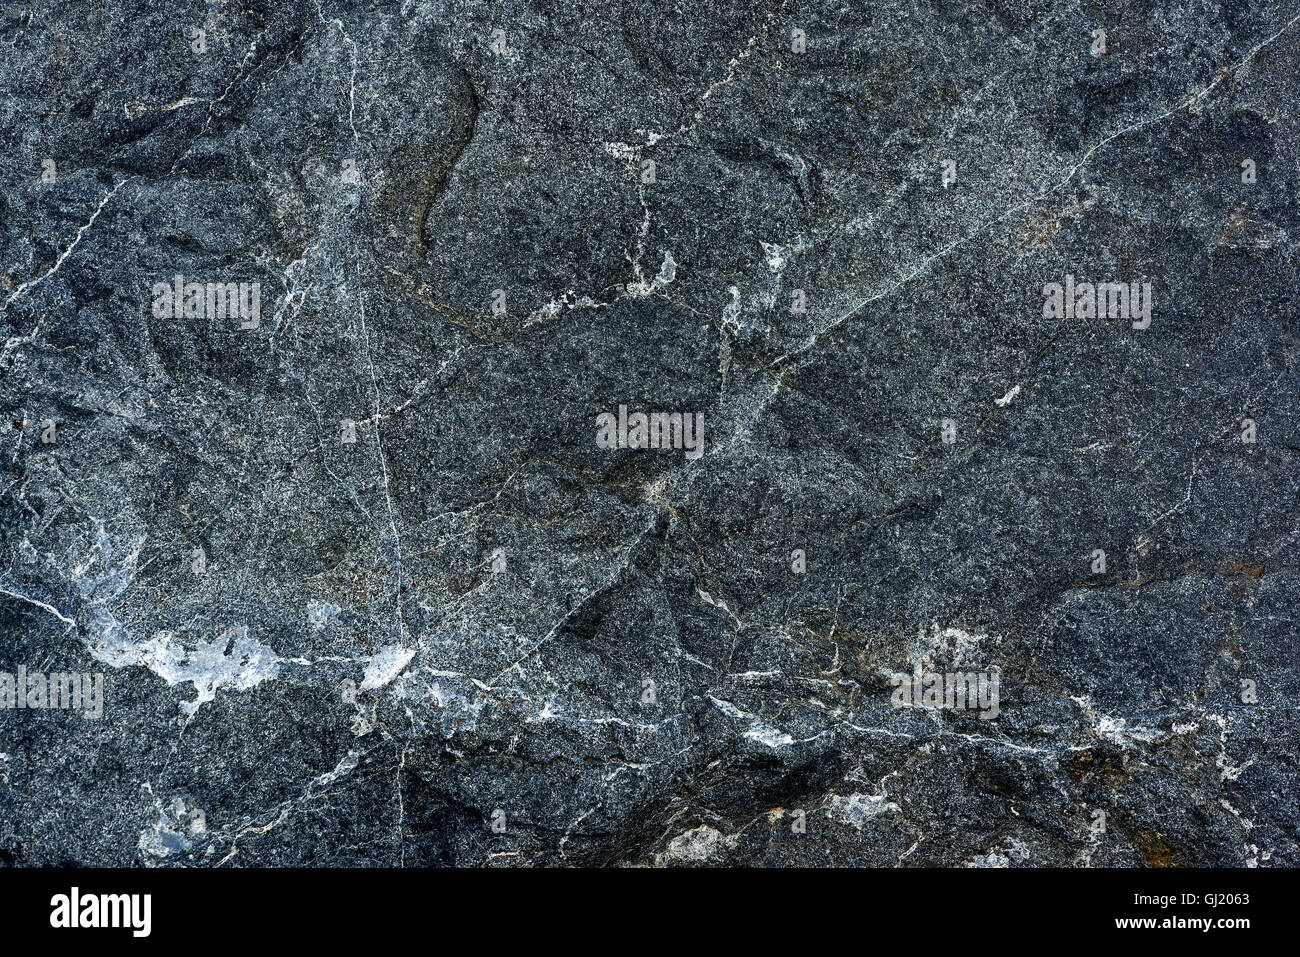 Motif et Texture dans close up de roche ignée à grain fin avec des intrusions de quartz Banque D'Images